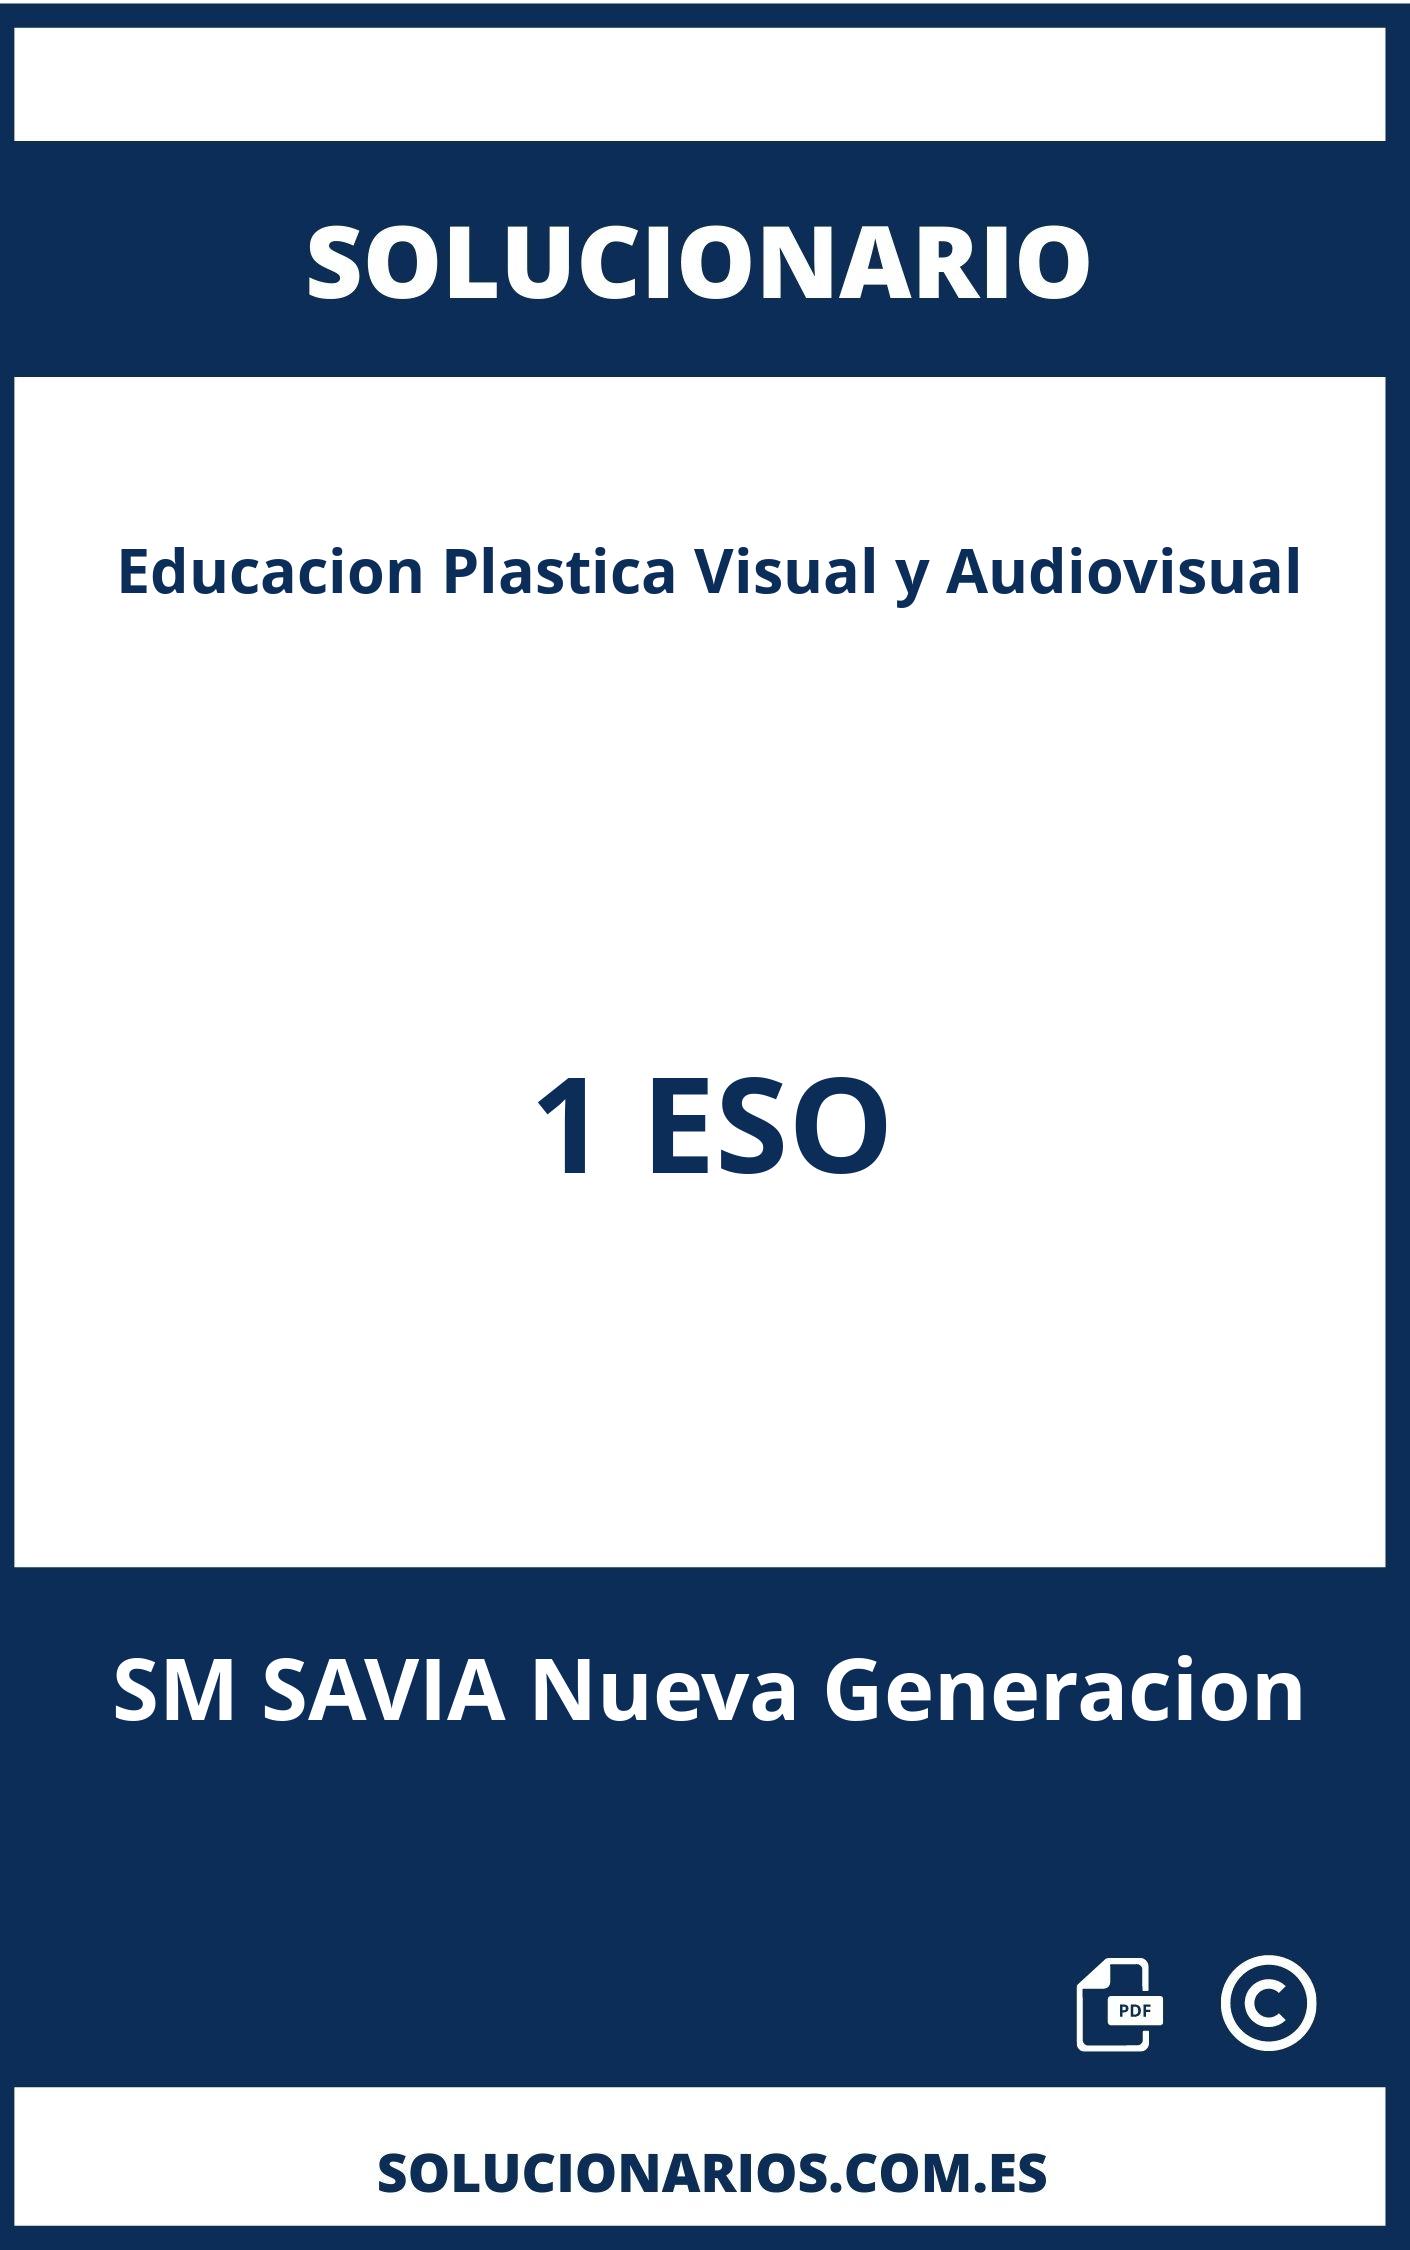 Solucionario Educacion Plastica Visual y Audiovisual 1 ESO SM SAVIA Nueva Generacion